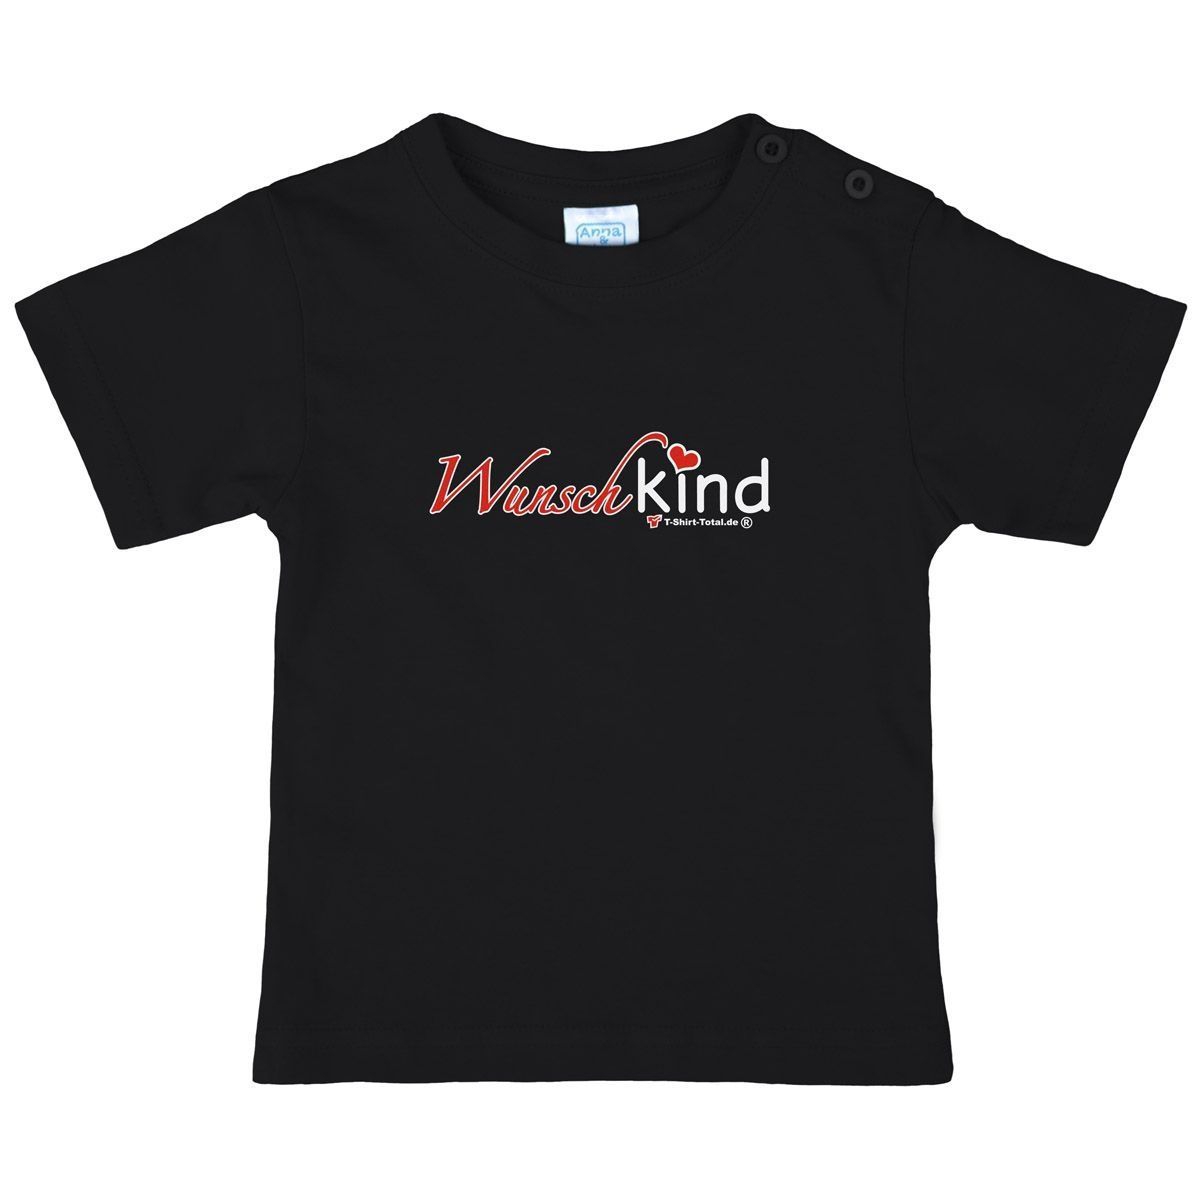 Wunschkind Kinder T-Shirt schwarz 56 / 62